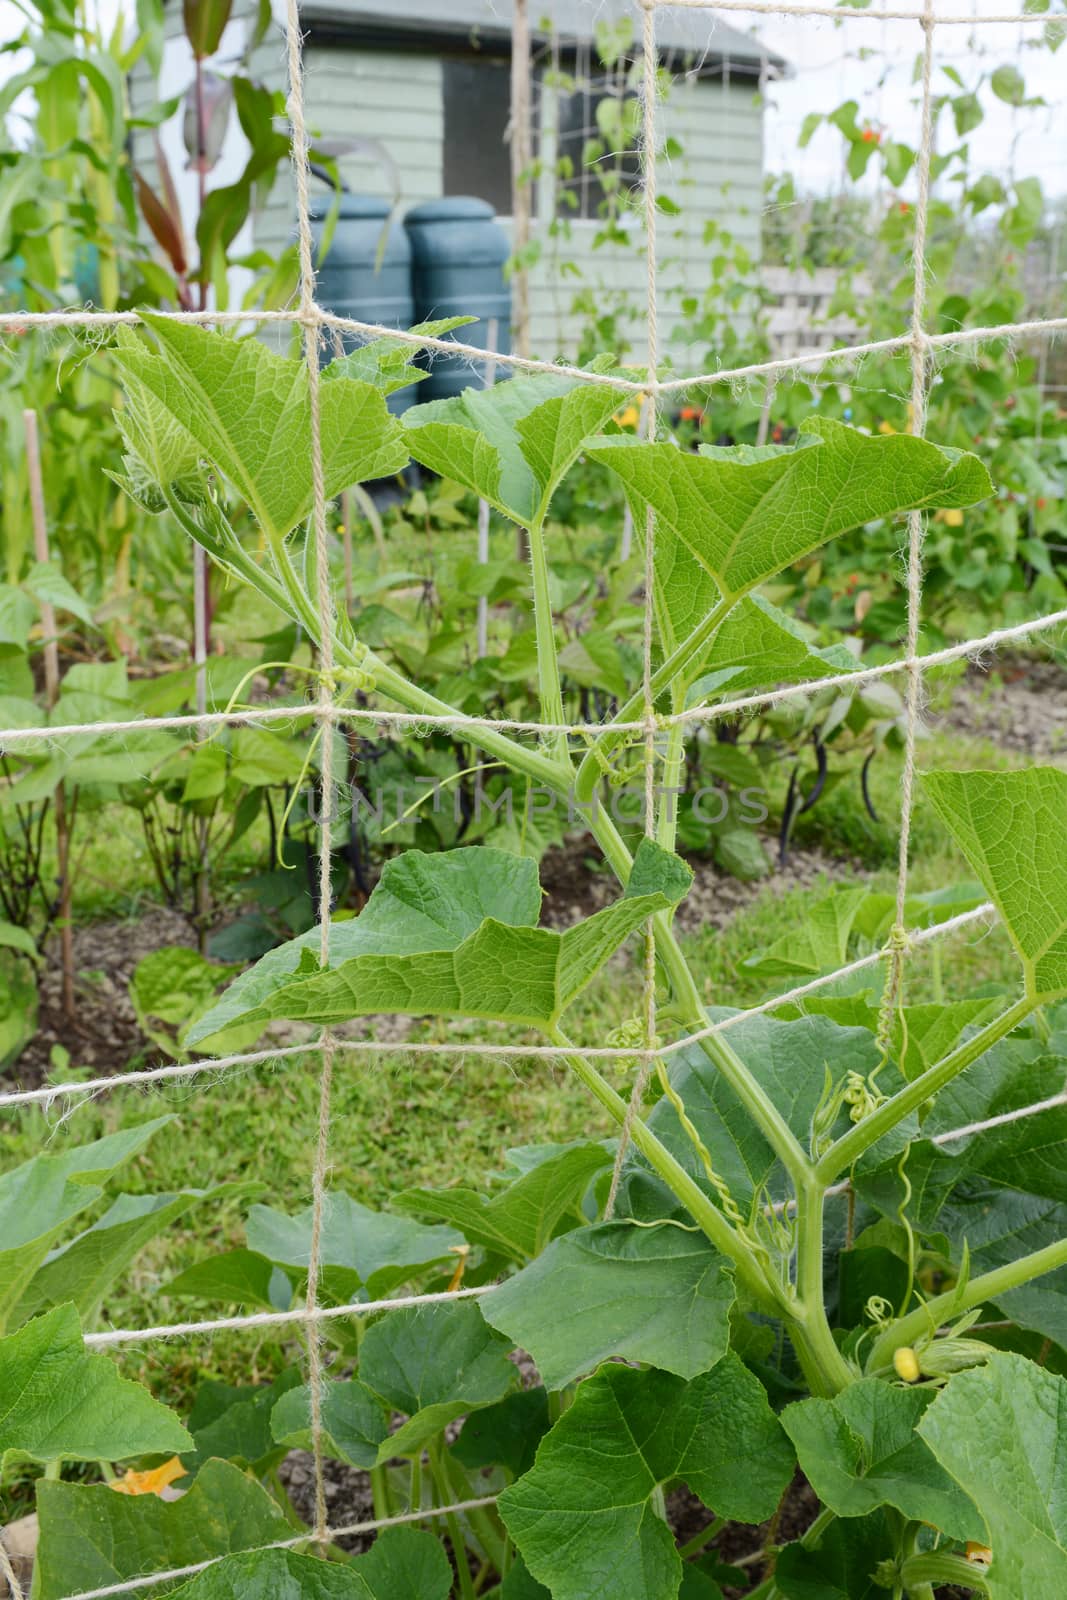 Jack-be-little pumpkin vine climbs a trellis, winding tendrils around the netting in a flourishing allotment garden